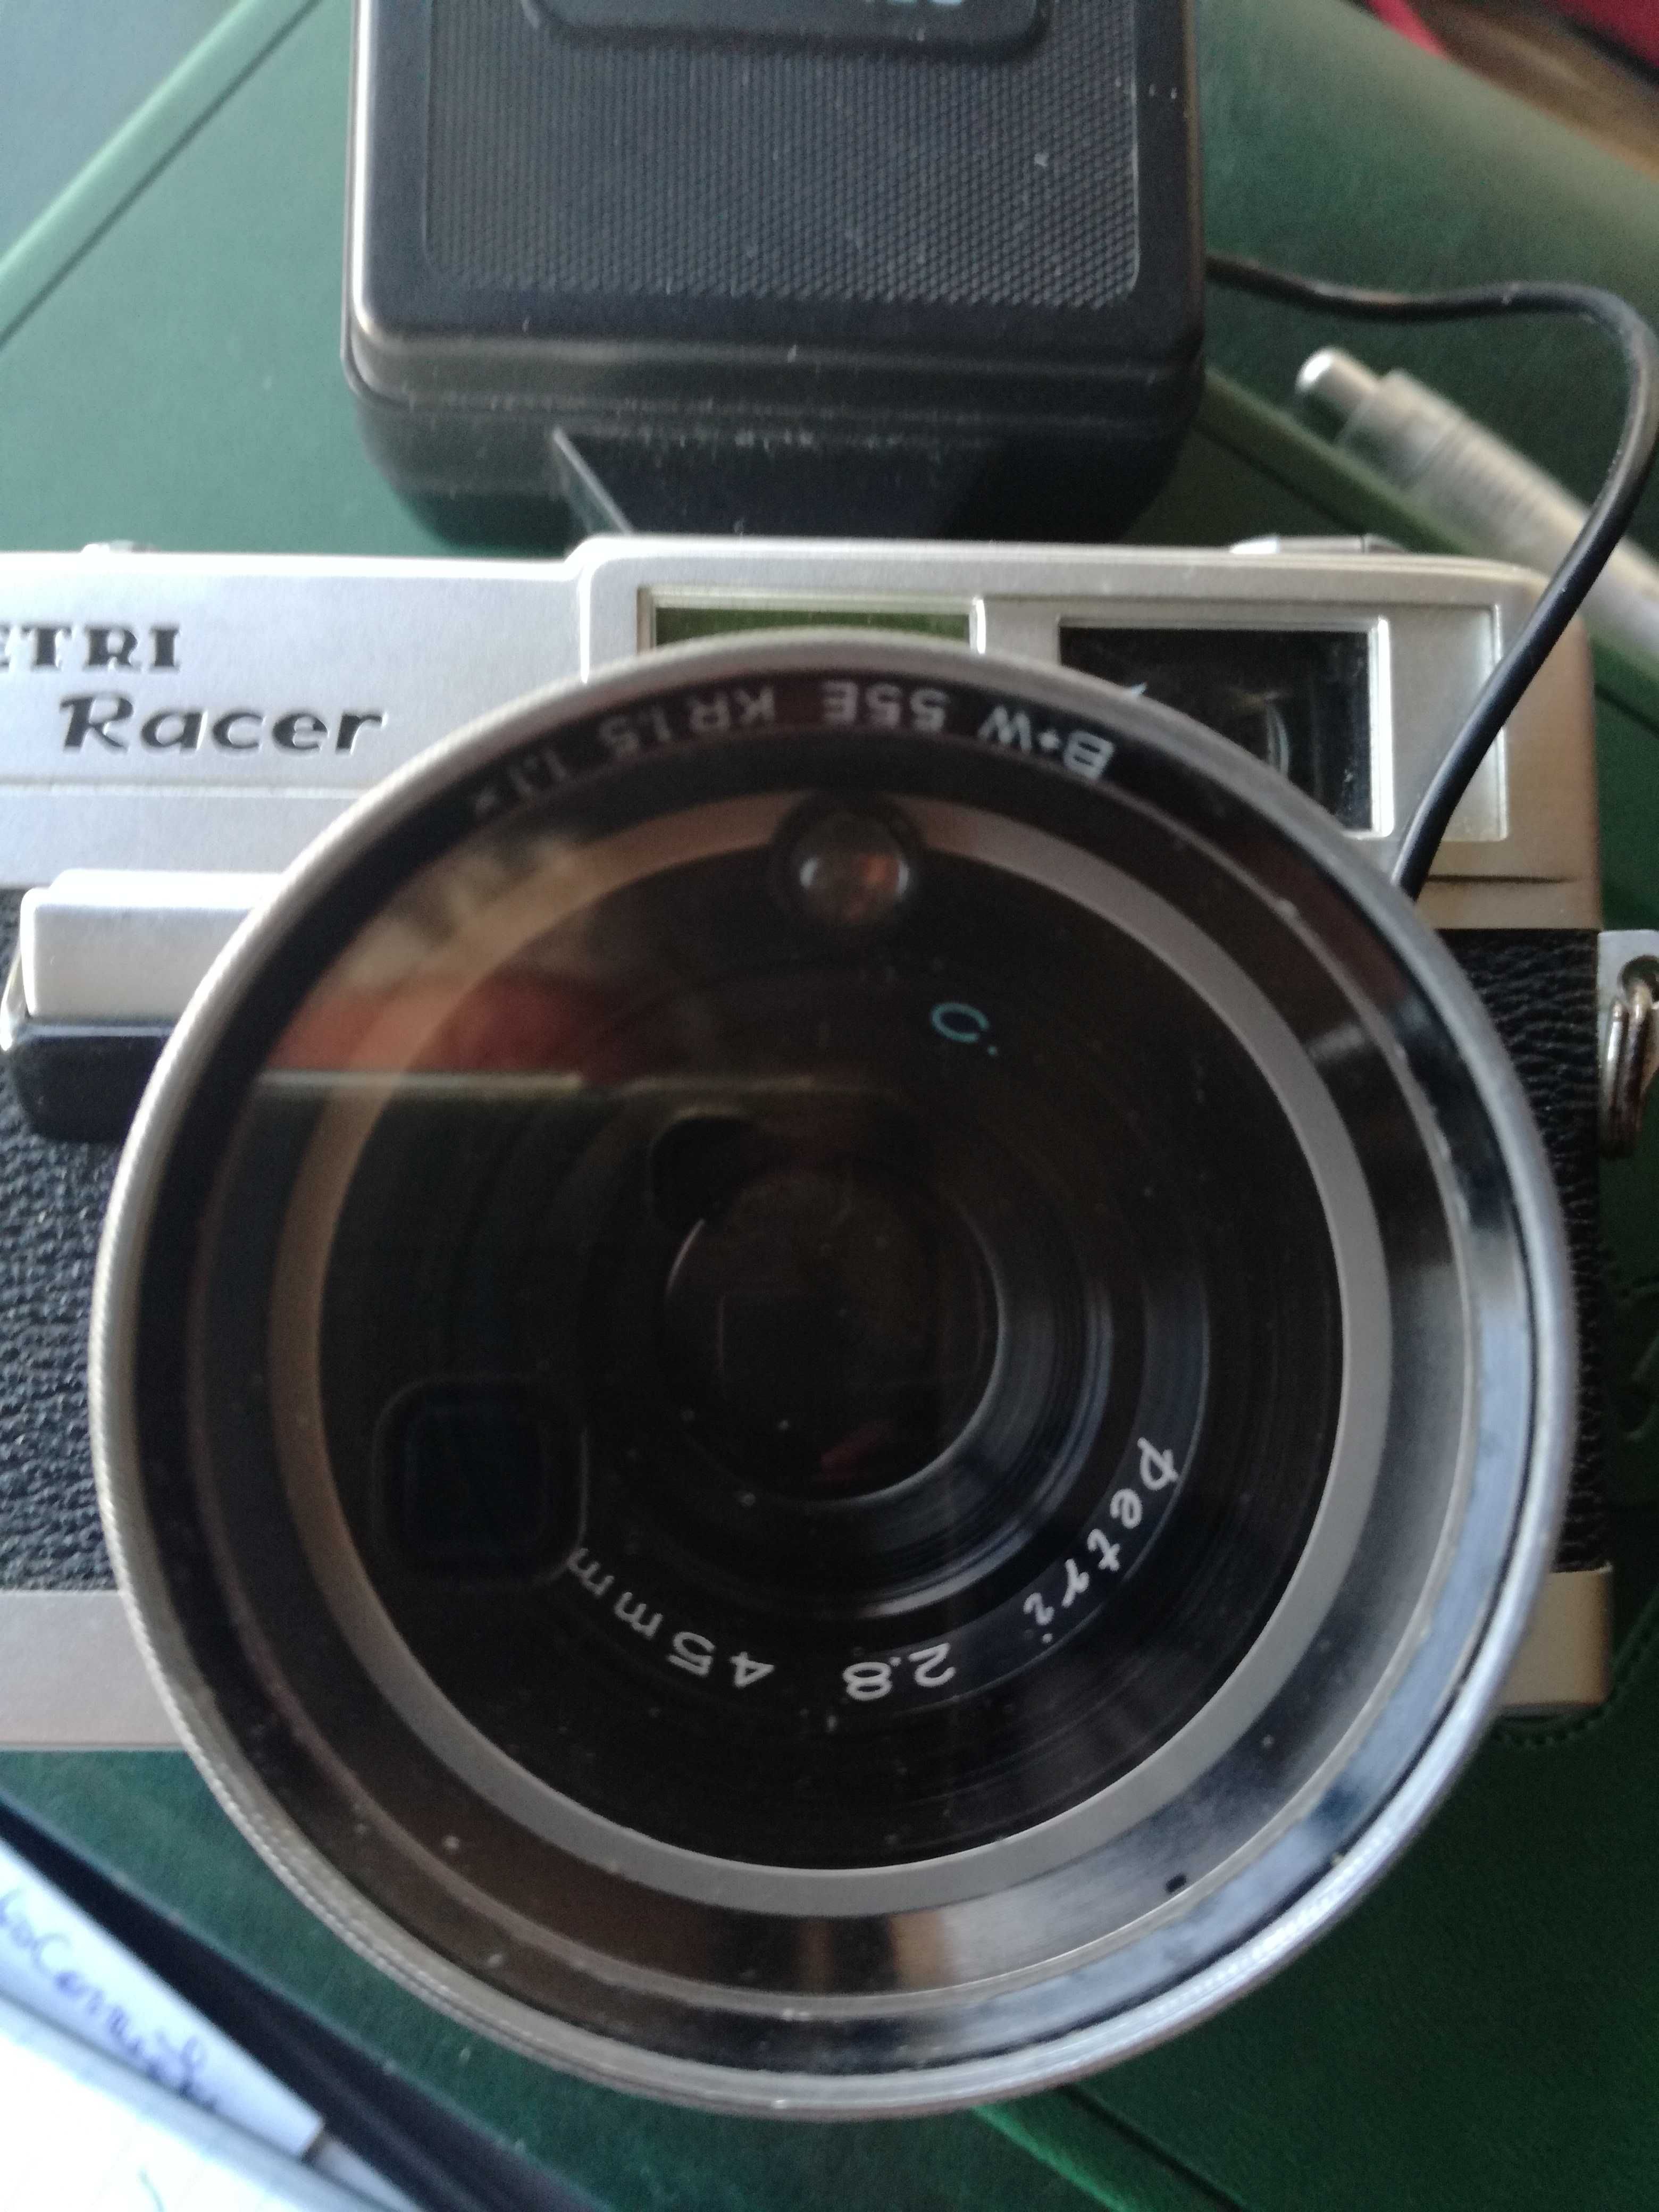 Vendo máquina fotográfica analógica Petri Racer